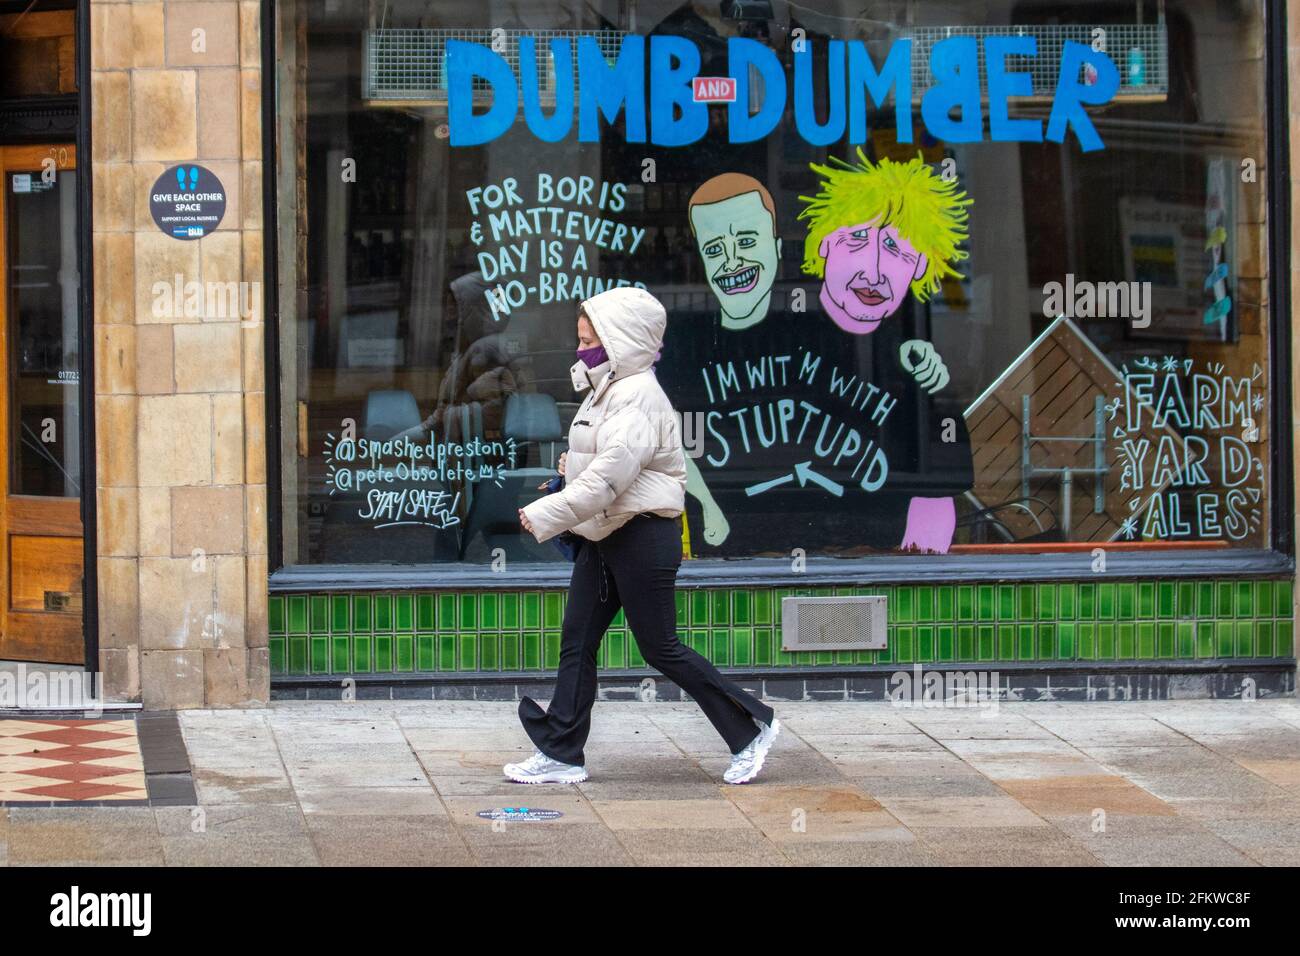 Boris Johnson Tory Führer Cartoon-Bilder in Preston; Lancashire. Mai 2021; UK Wetter; Anoraks wasserdichte Jacken und Regenmäntel sind an einem kalten, nassen und windigen Tag an der Tagesordnung. Satire, Comic, Karikaturen, satirische politische Cartoons, Parodie im Stadtzentrum. Stockfoto